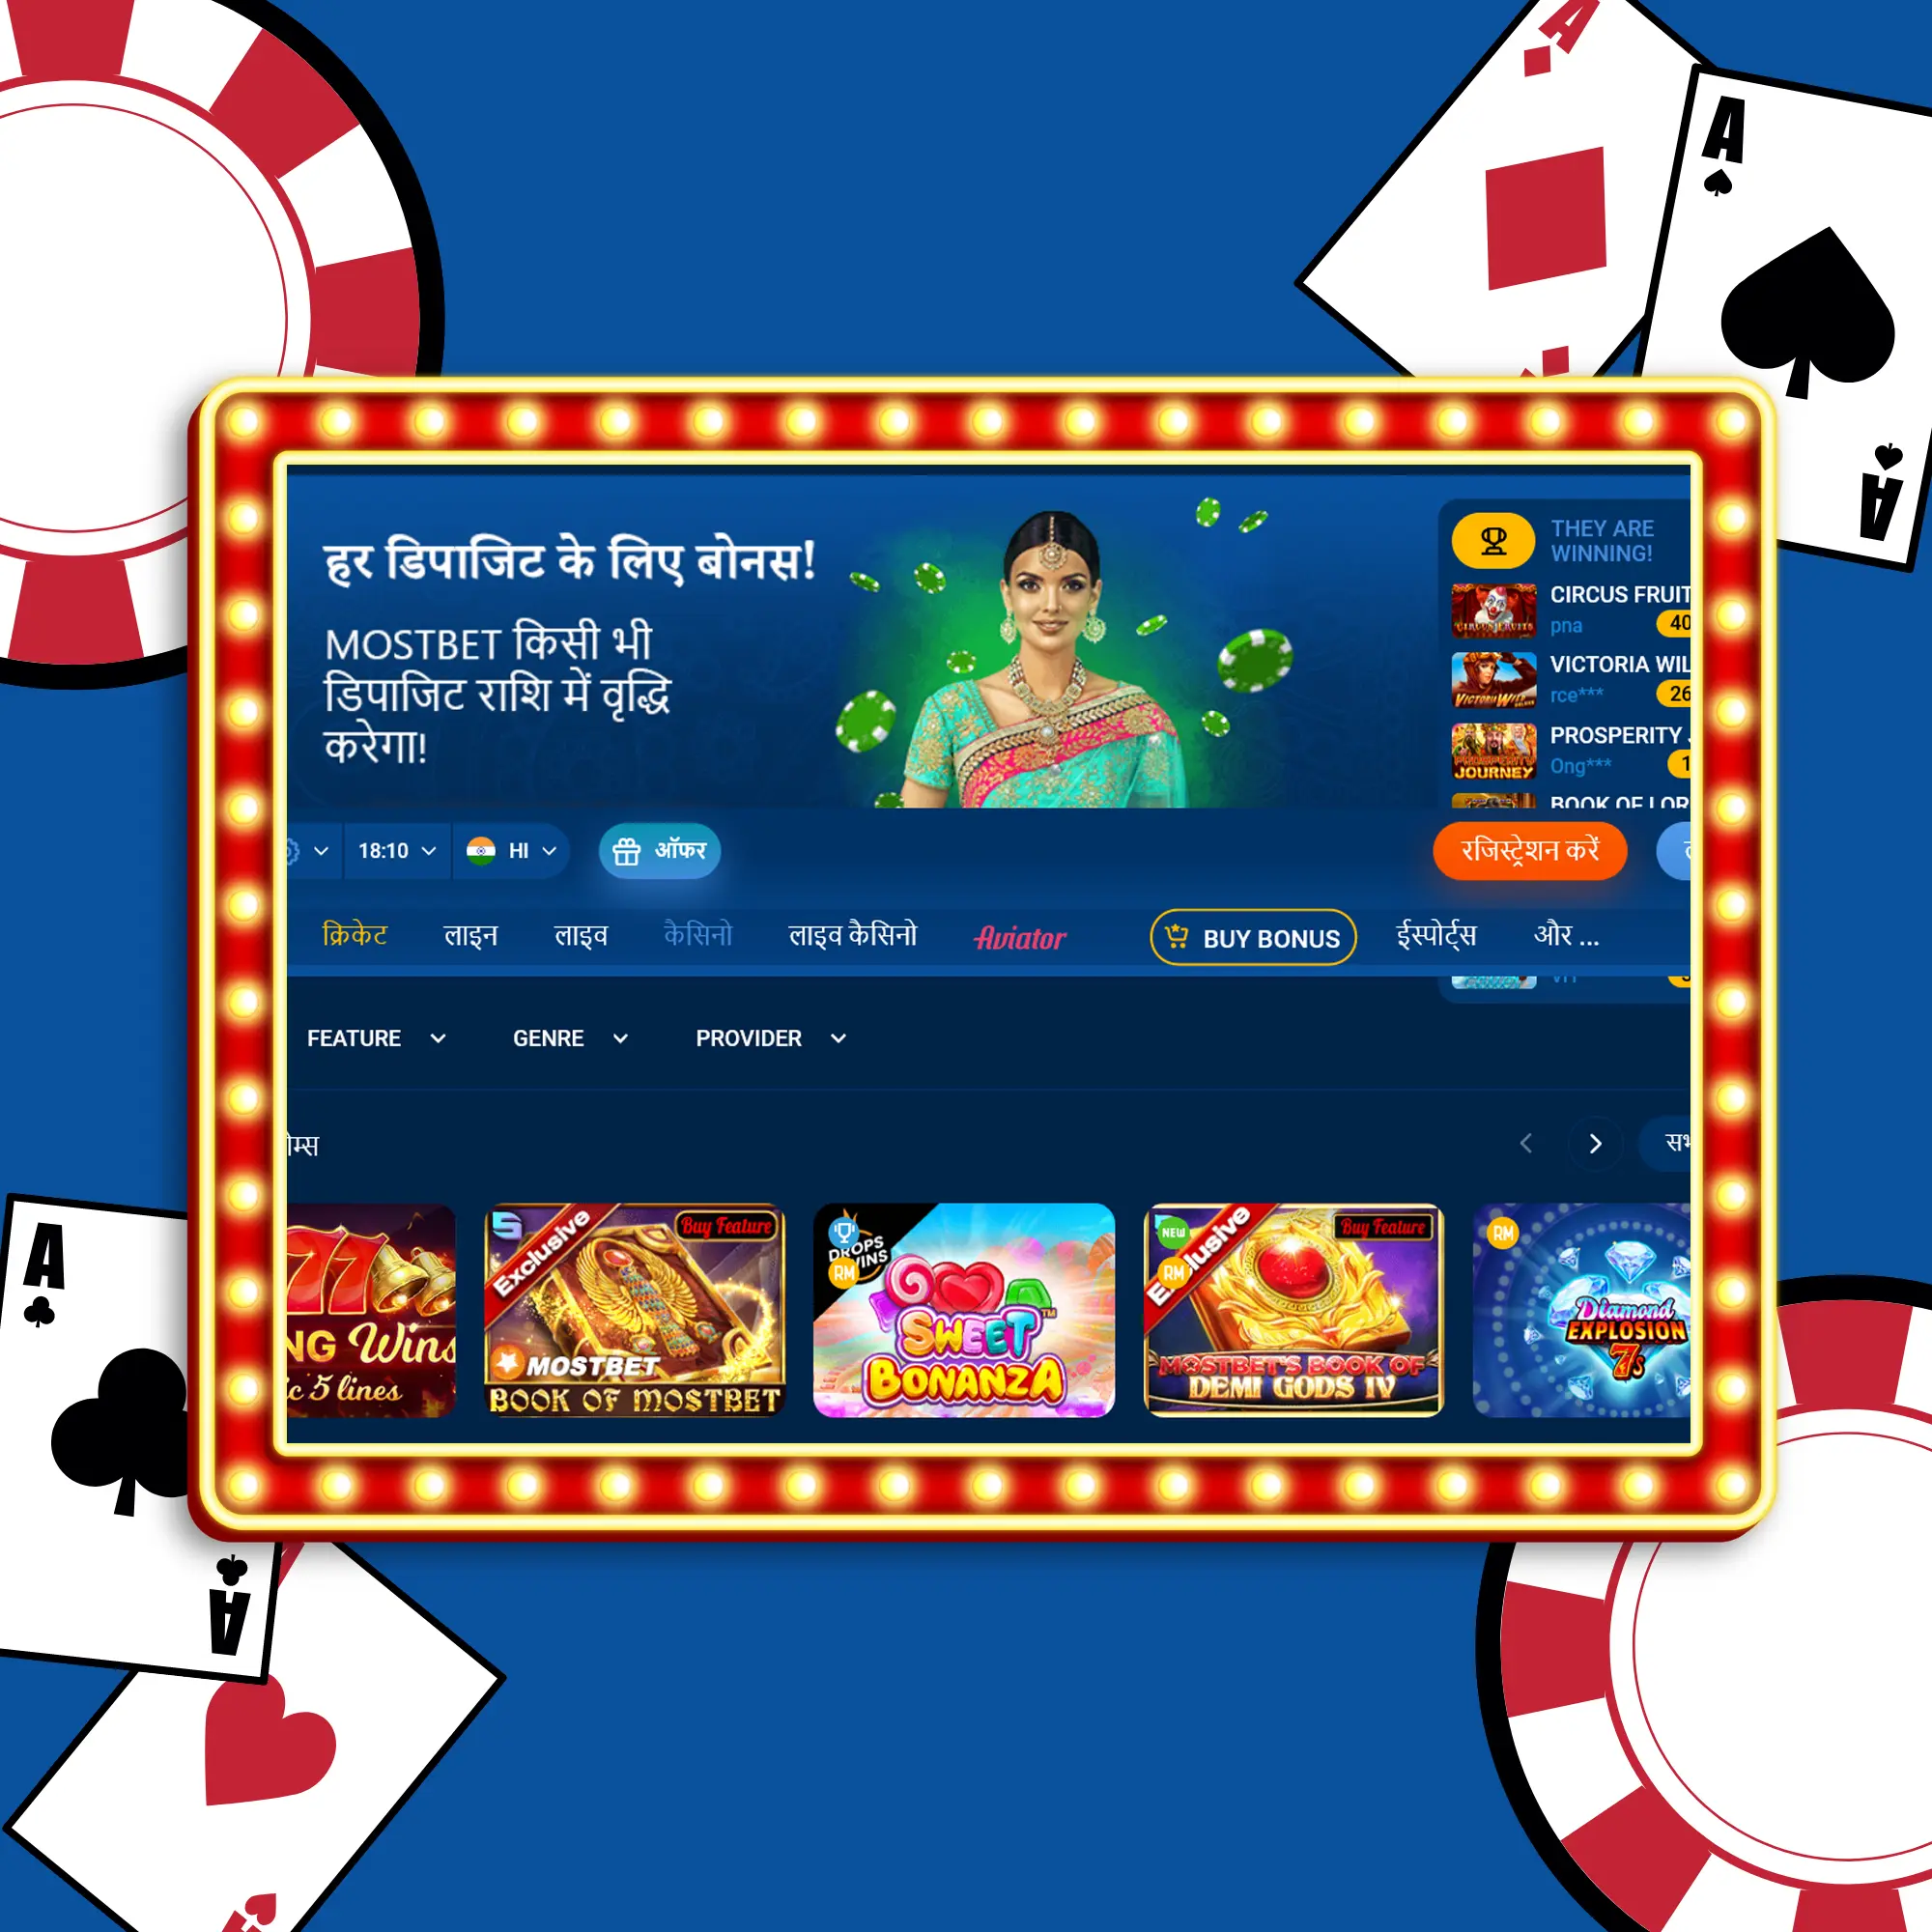 Mostbet casino India